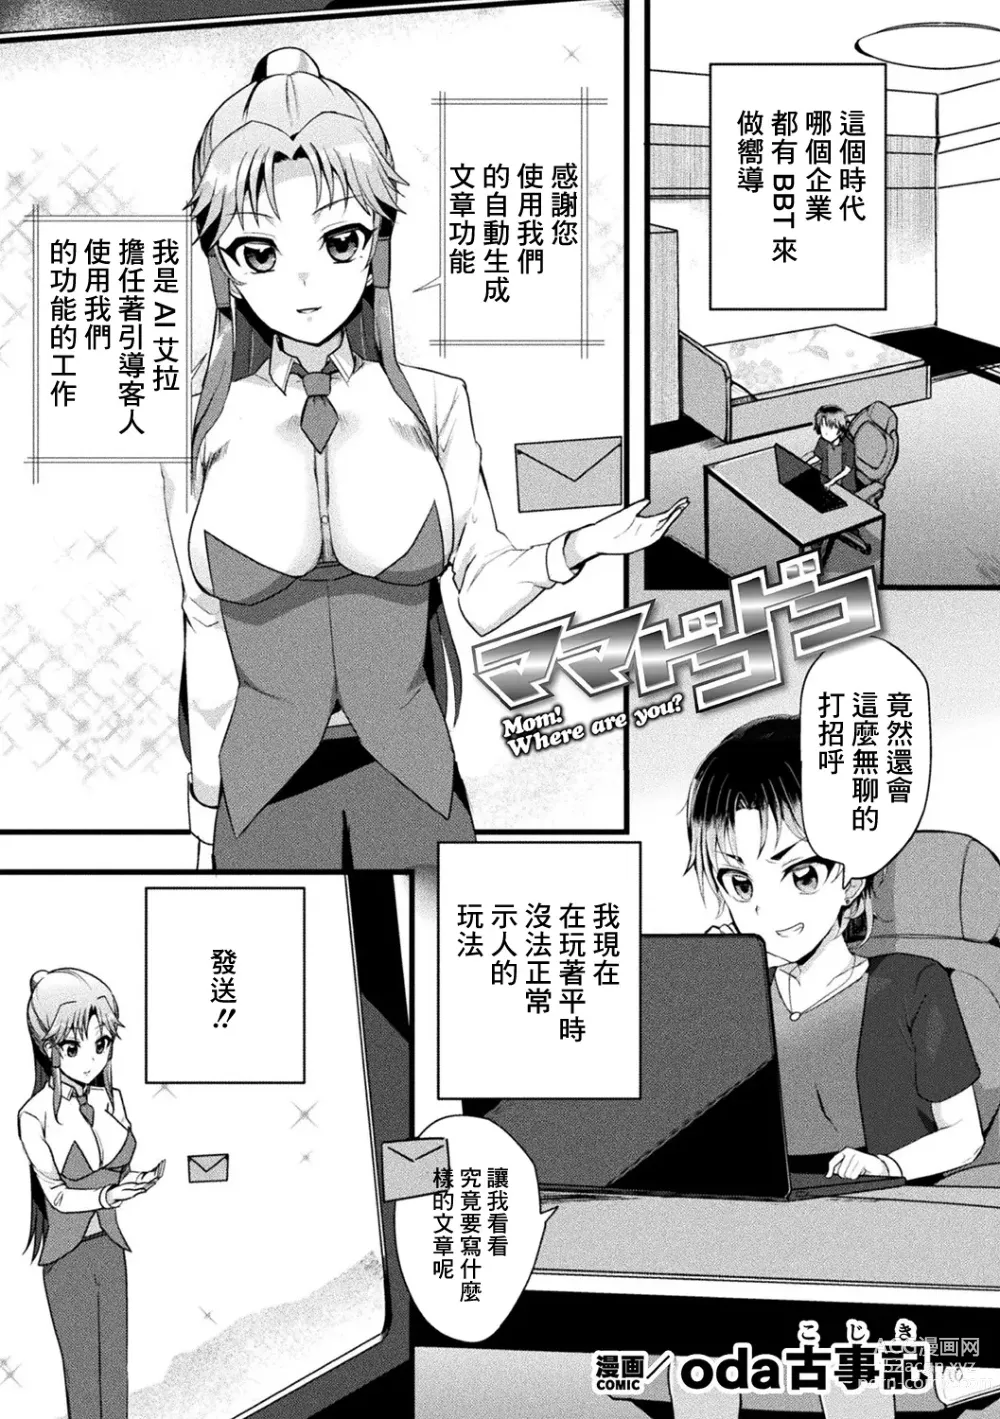 Page 1 of manga Mama Doko Doko - Mom! Where are you?